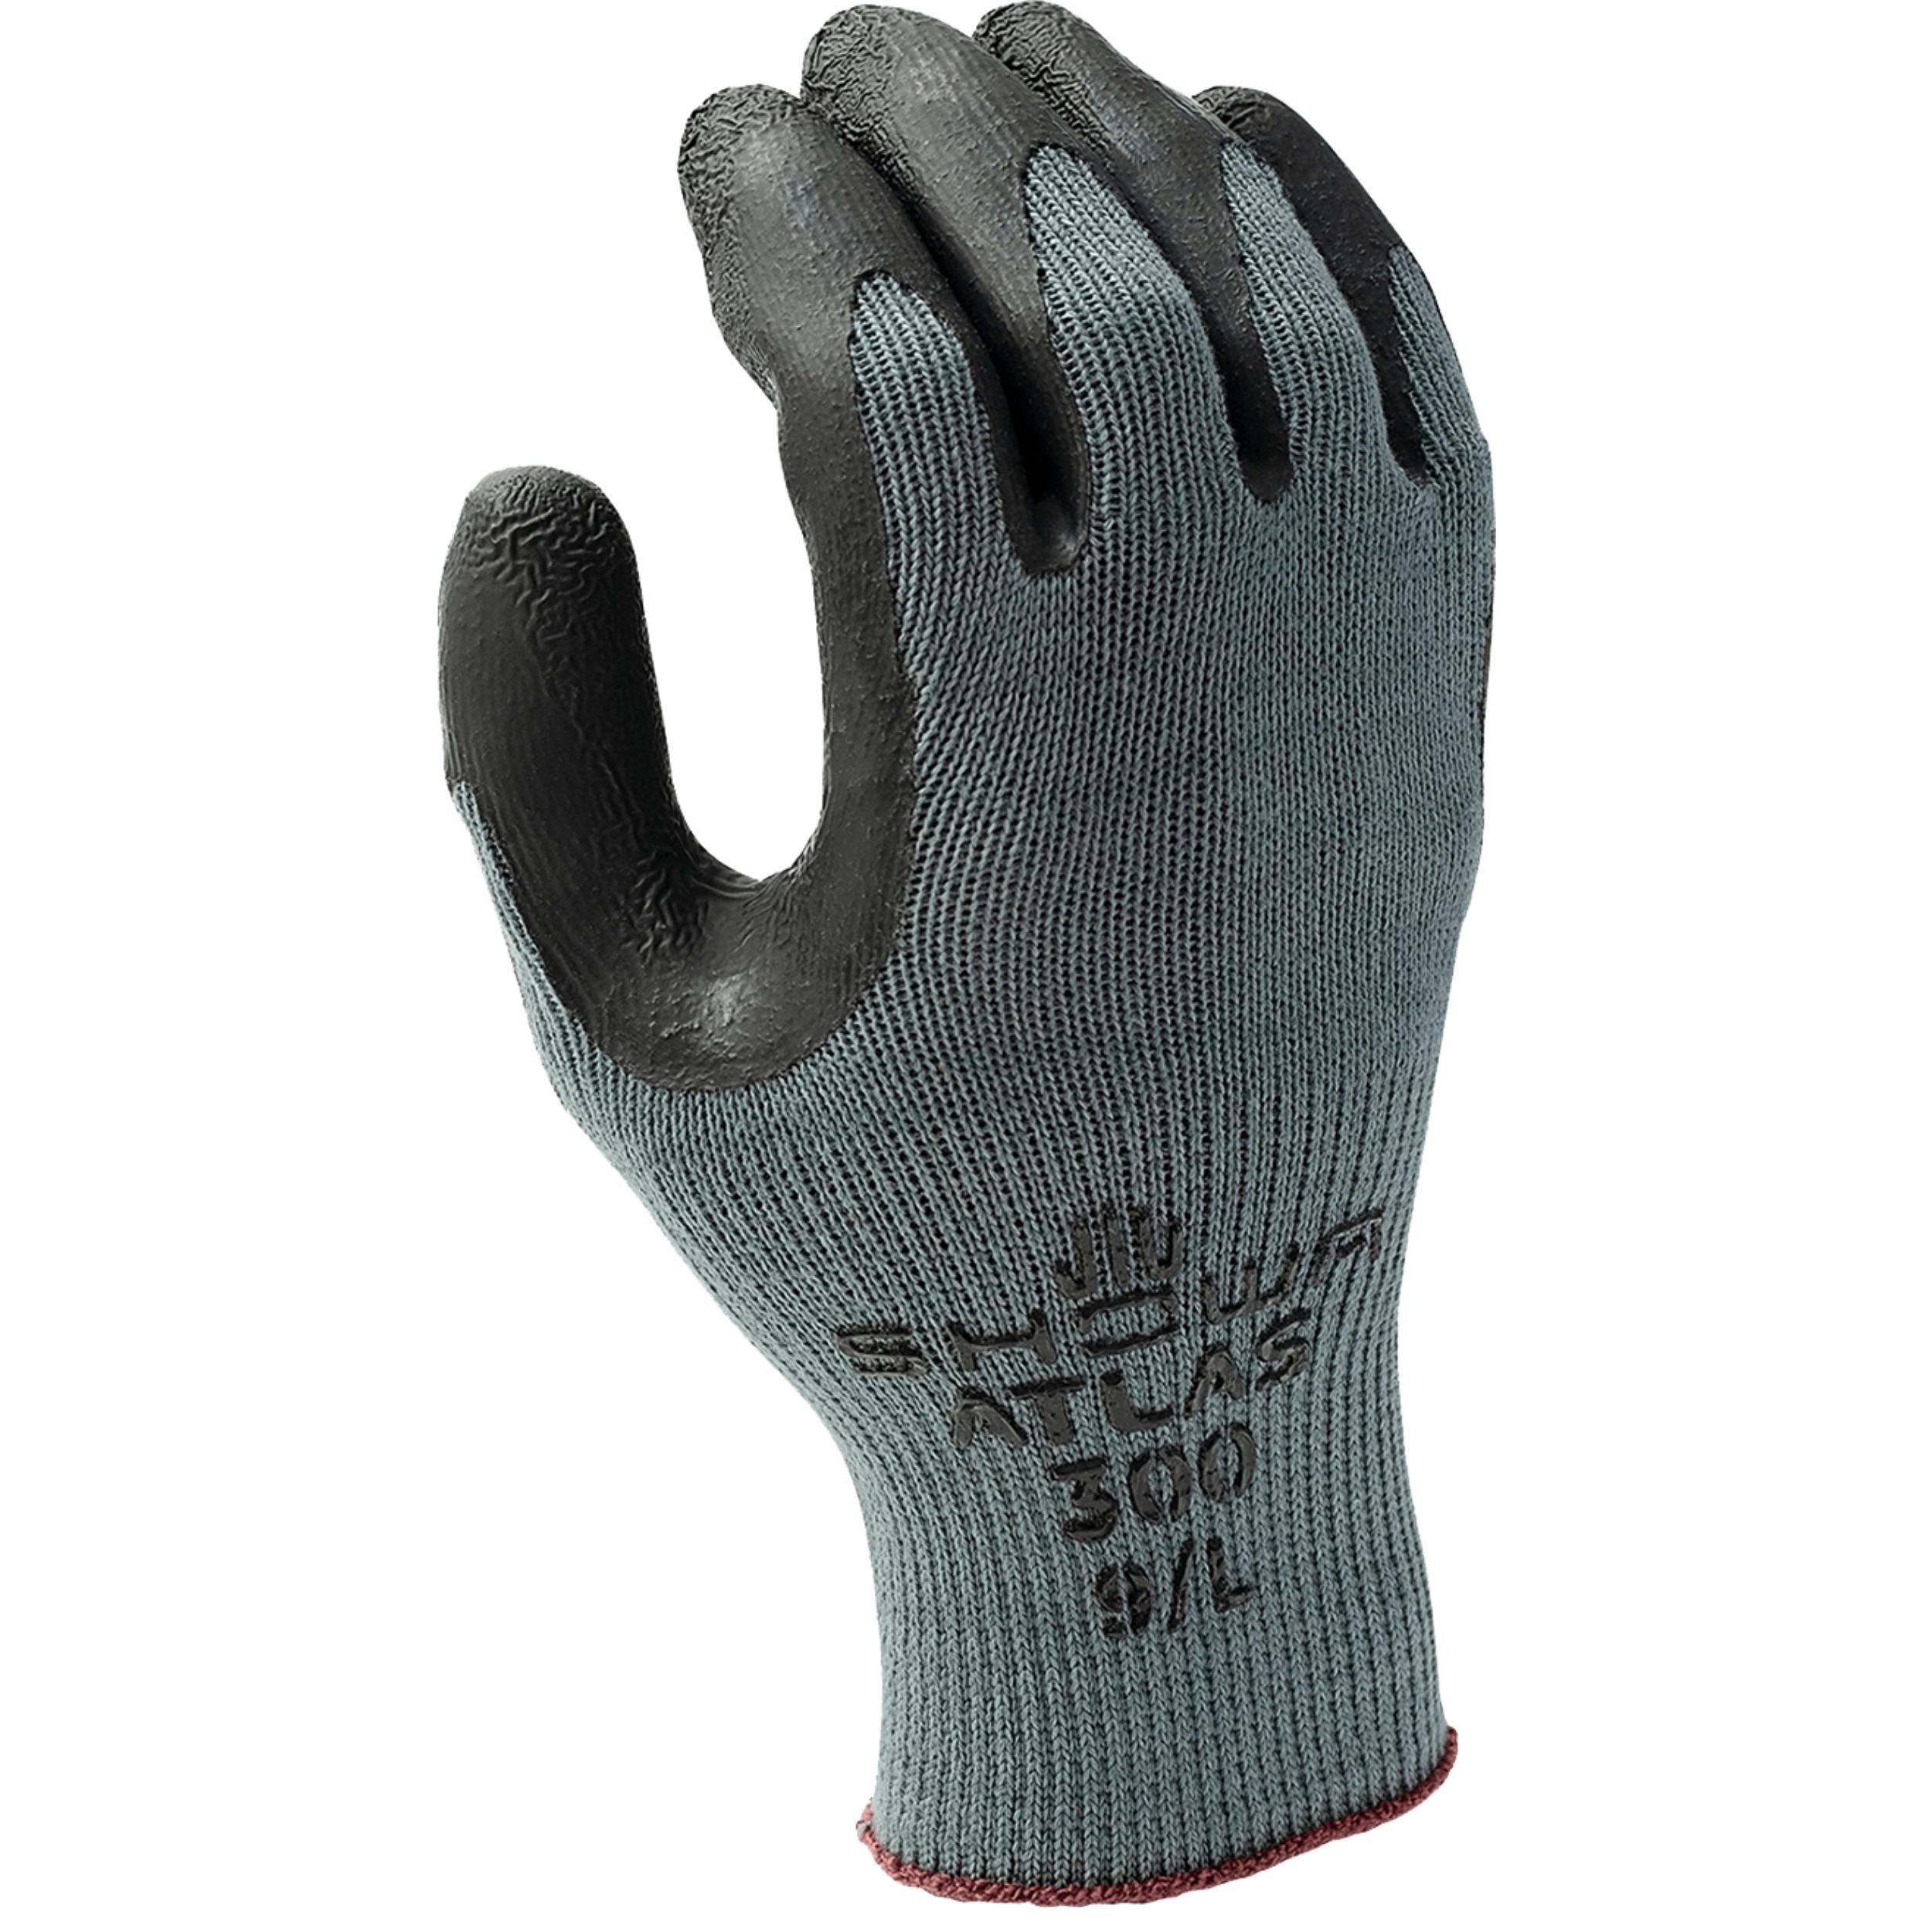 SHOWA ATLAS® 300B : General-purpose Gloves